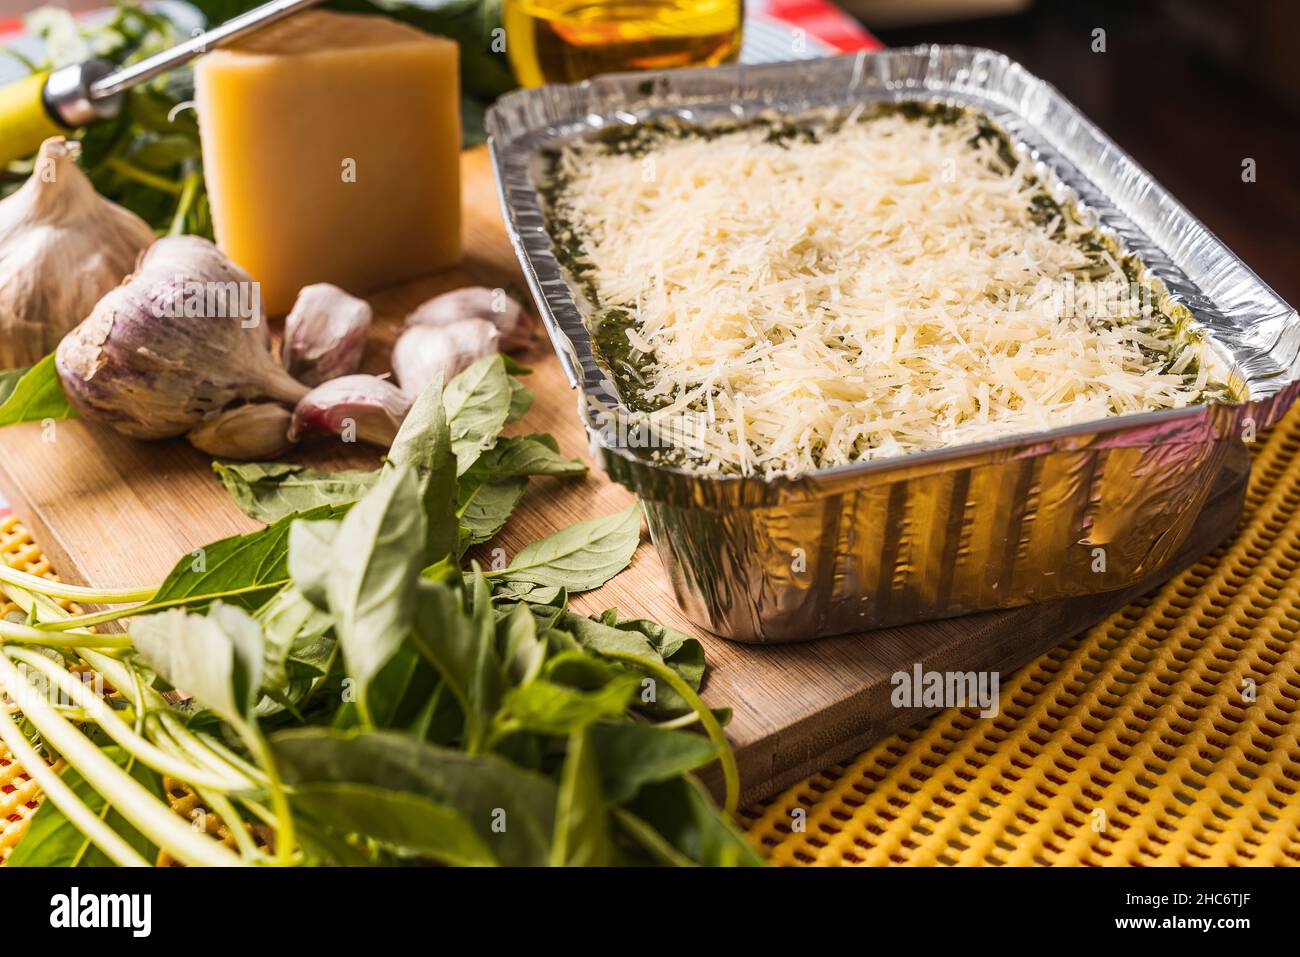 Lasaña casera con pesto en una bandeja de aluminio con un montón de queso rallado la parte superior una tabla de madera y los diferentes ingredientes crudos que componen Fotografía